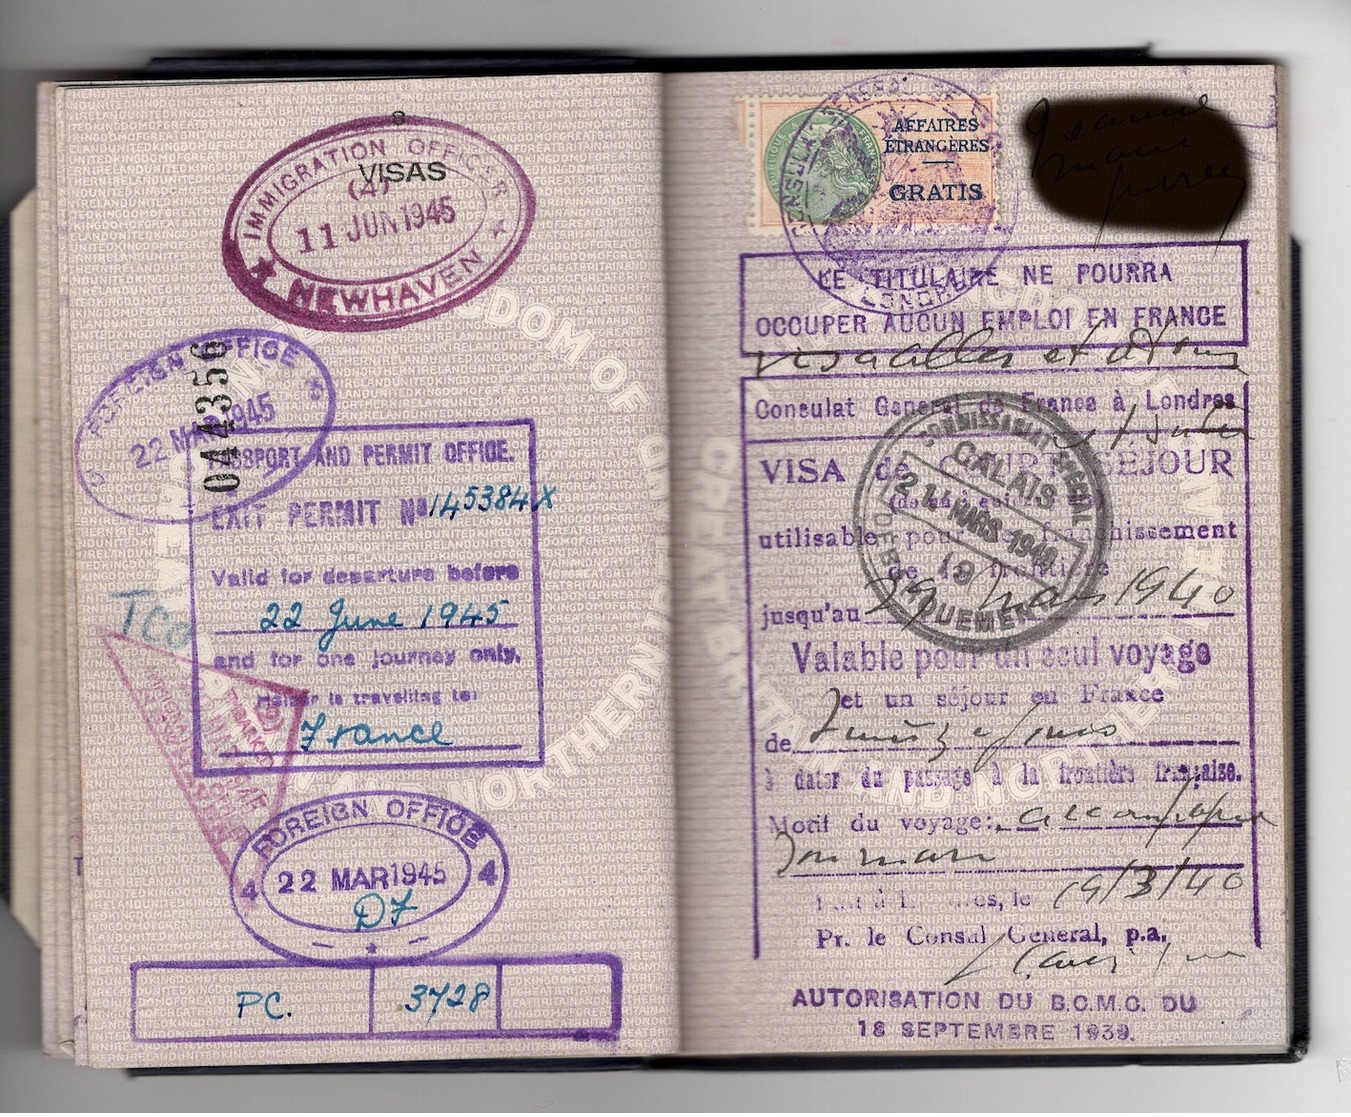 WW2 Passeport United Kingdom 1940/1945. Fiscaux France et étranger, "affaires étrangères GRATIS", nbx cachets consulats.